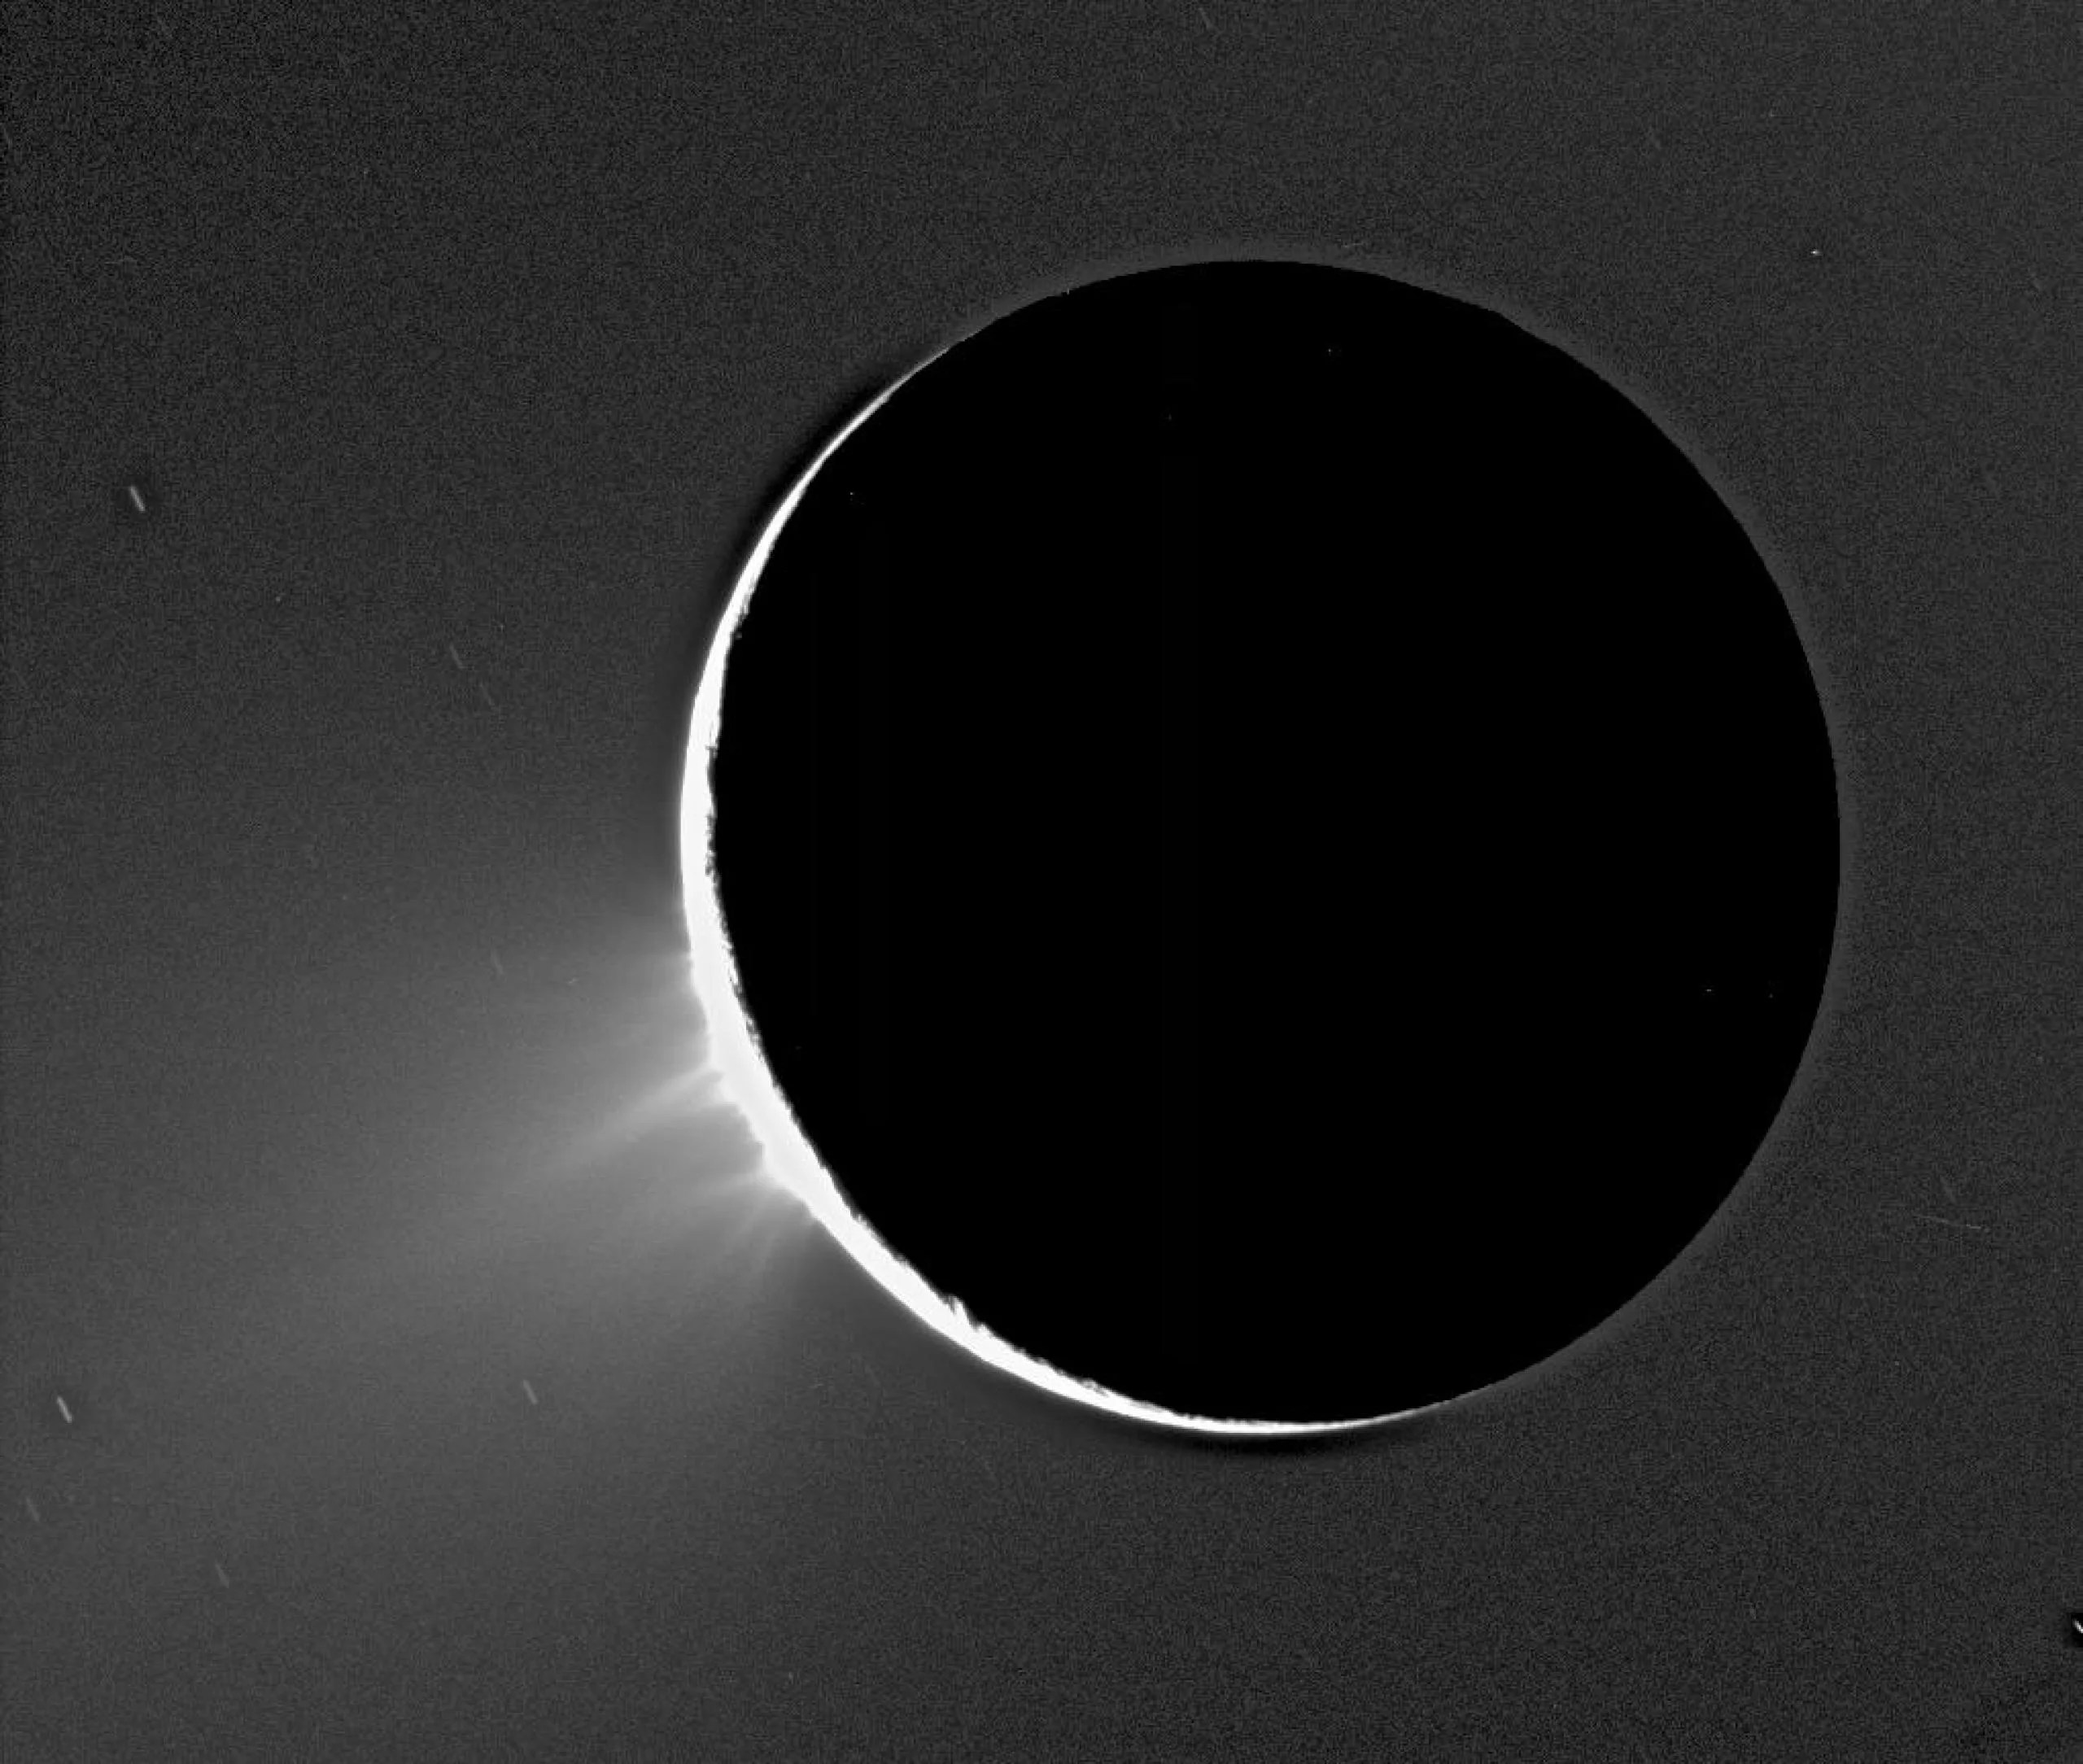 2_enceladus_plume_pic.jpeg